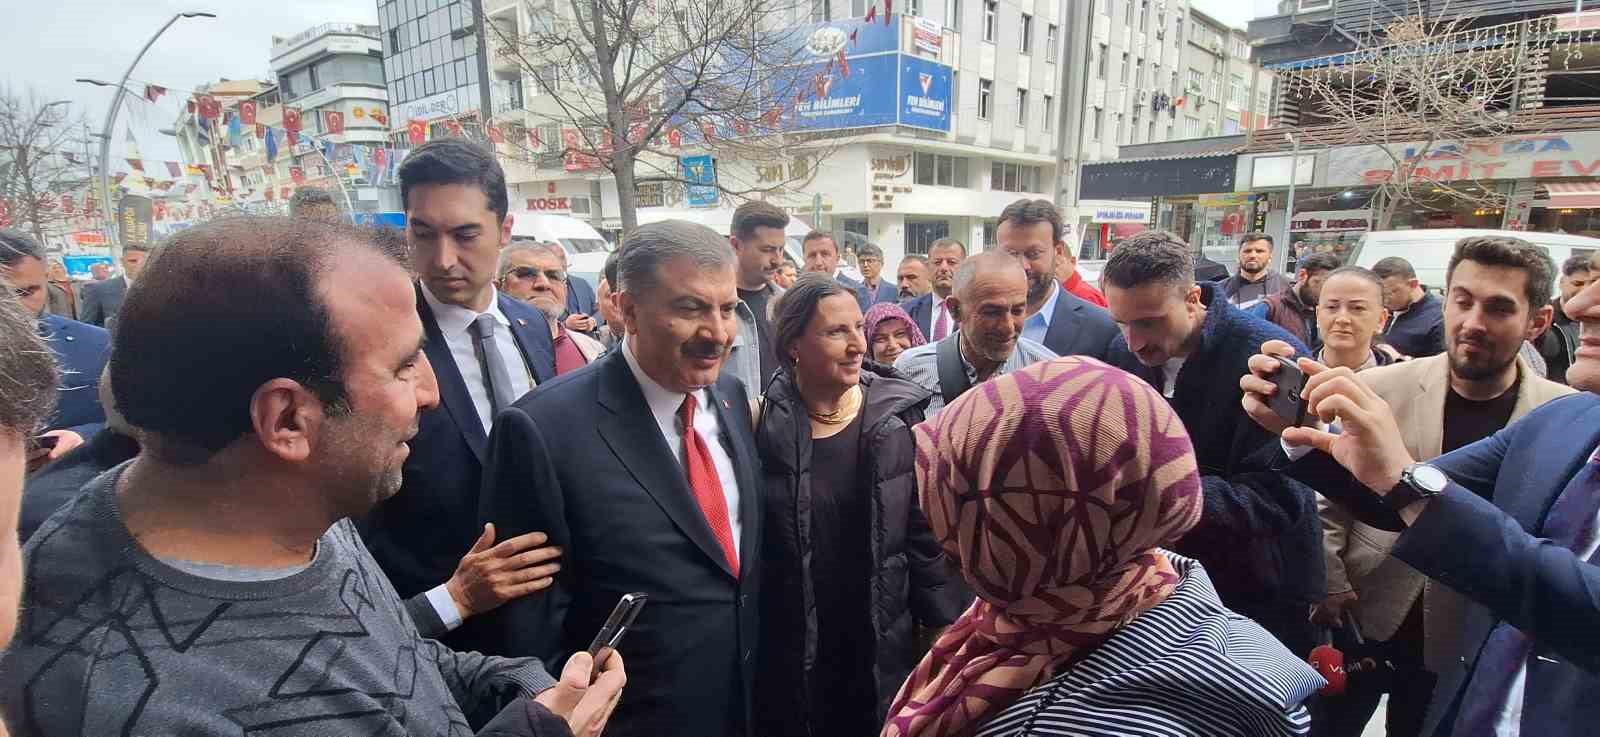 Sağlık Bakanı Koca: "Malpraktis, Türkiye’de kökten çözülüyor"
